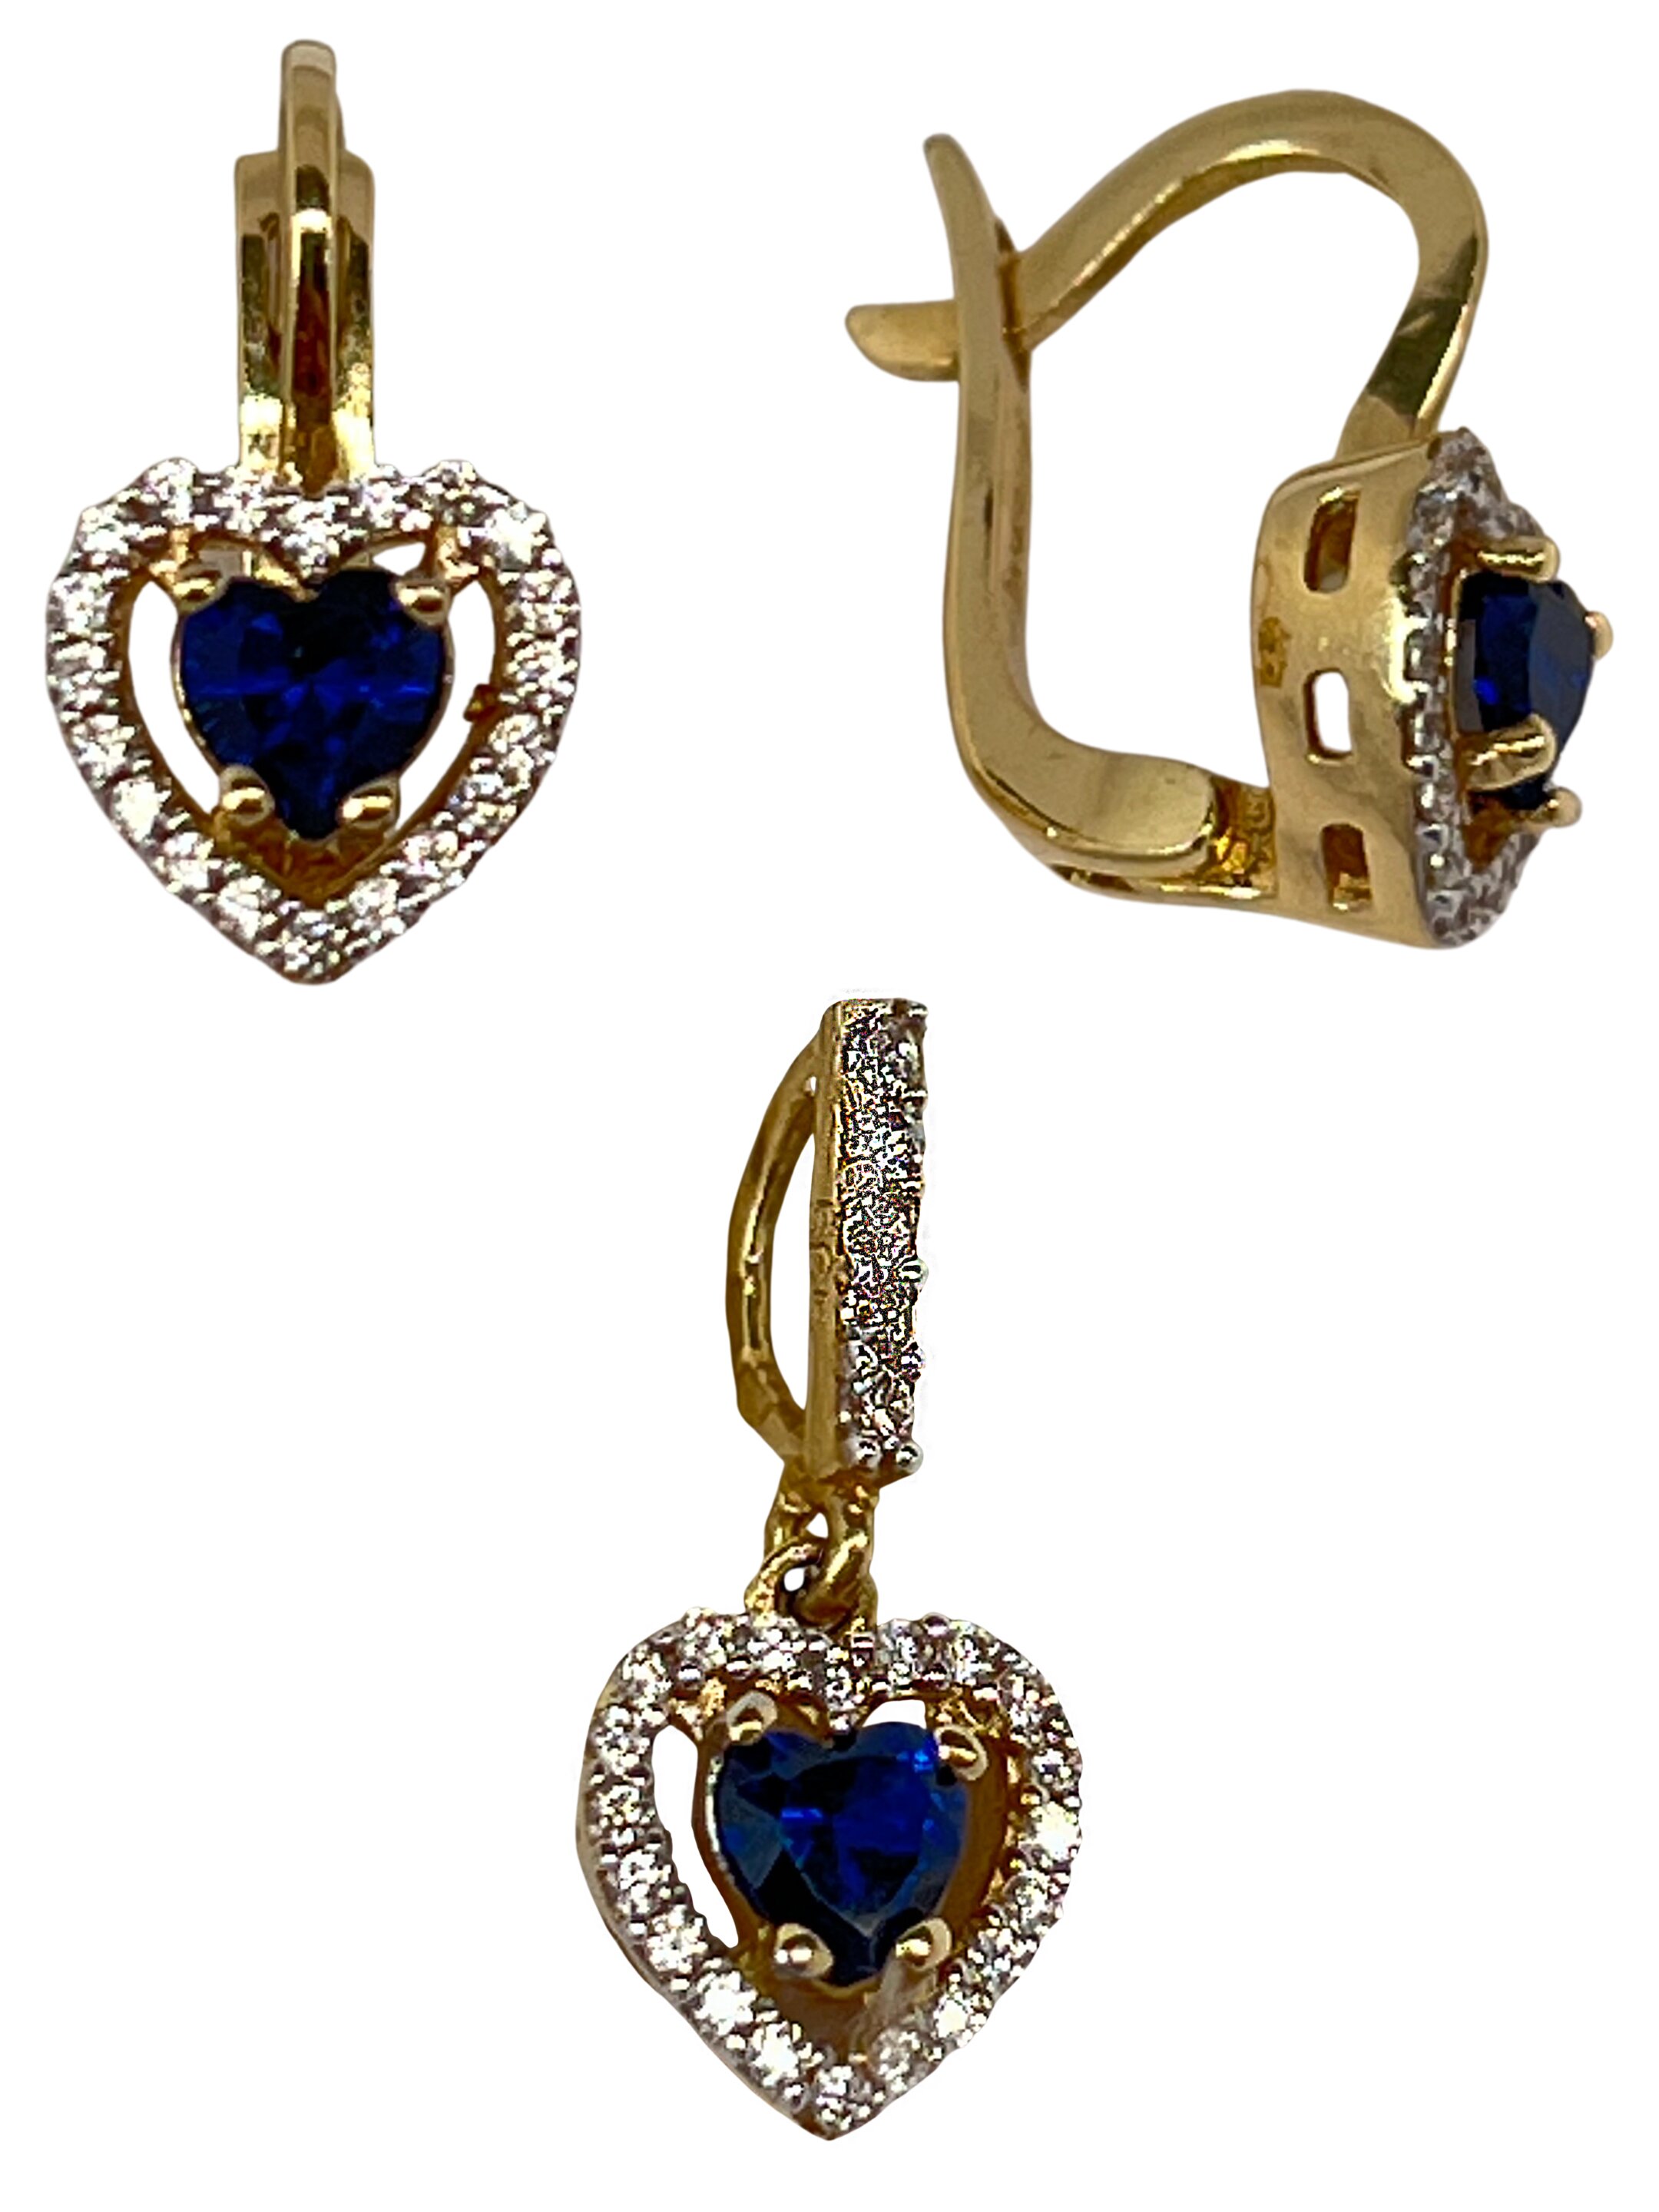 Romantisch goud bezet met blauwe zirkonen Romance III.